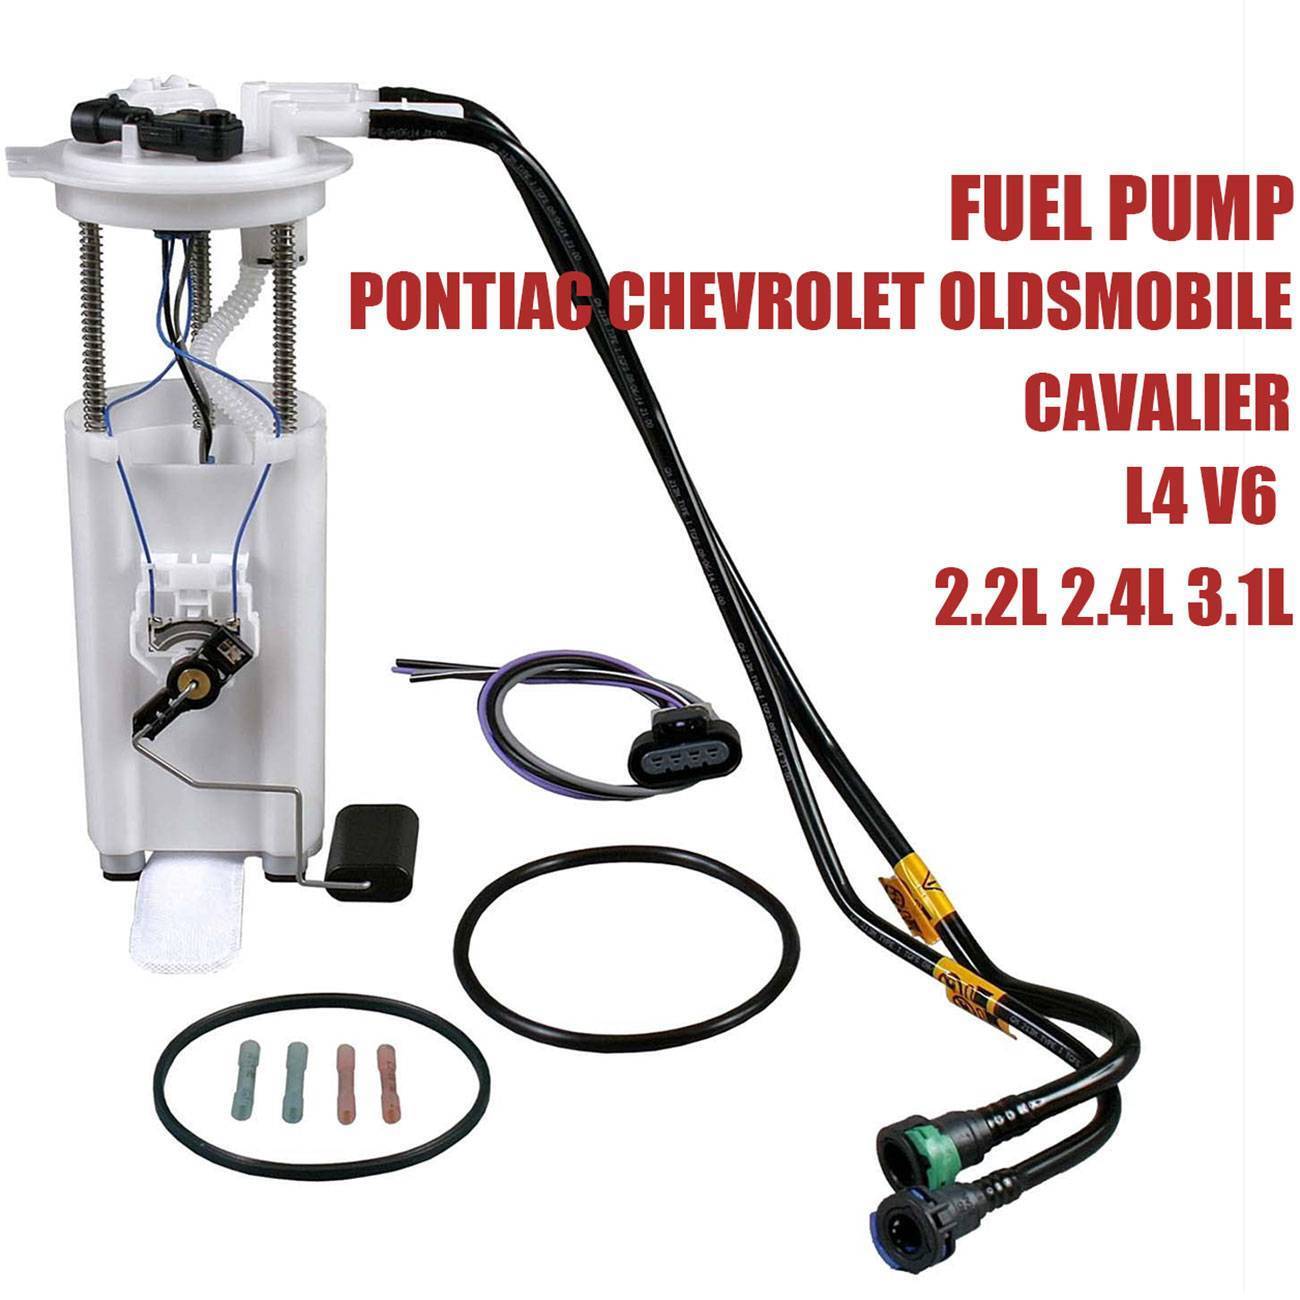 Fits 00-05 Chevy Cavalier Grand Am Pontiac Fuel Pump Module w/ Sensor E3507M